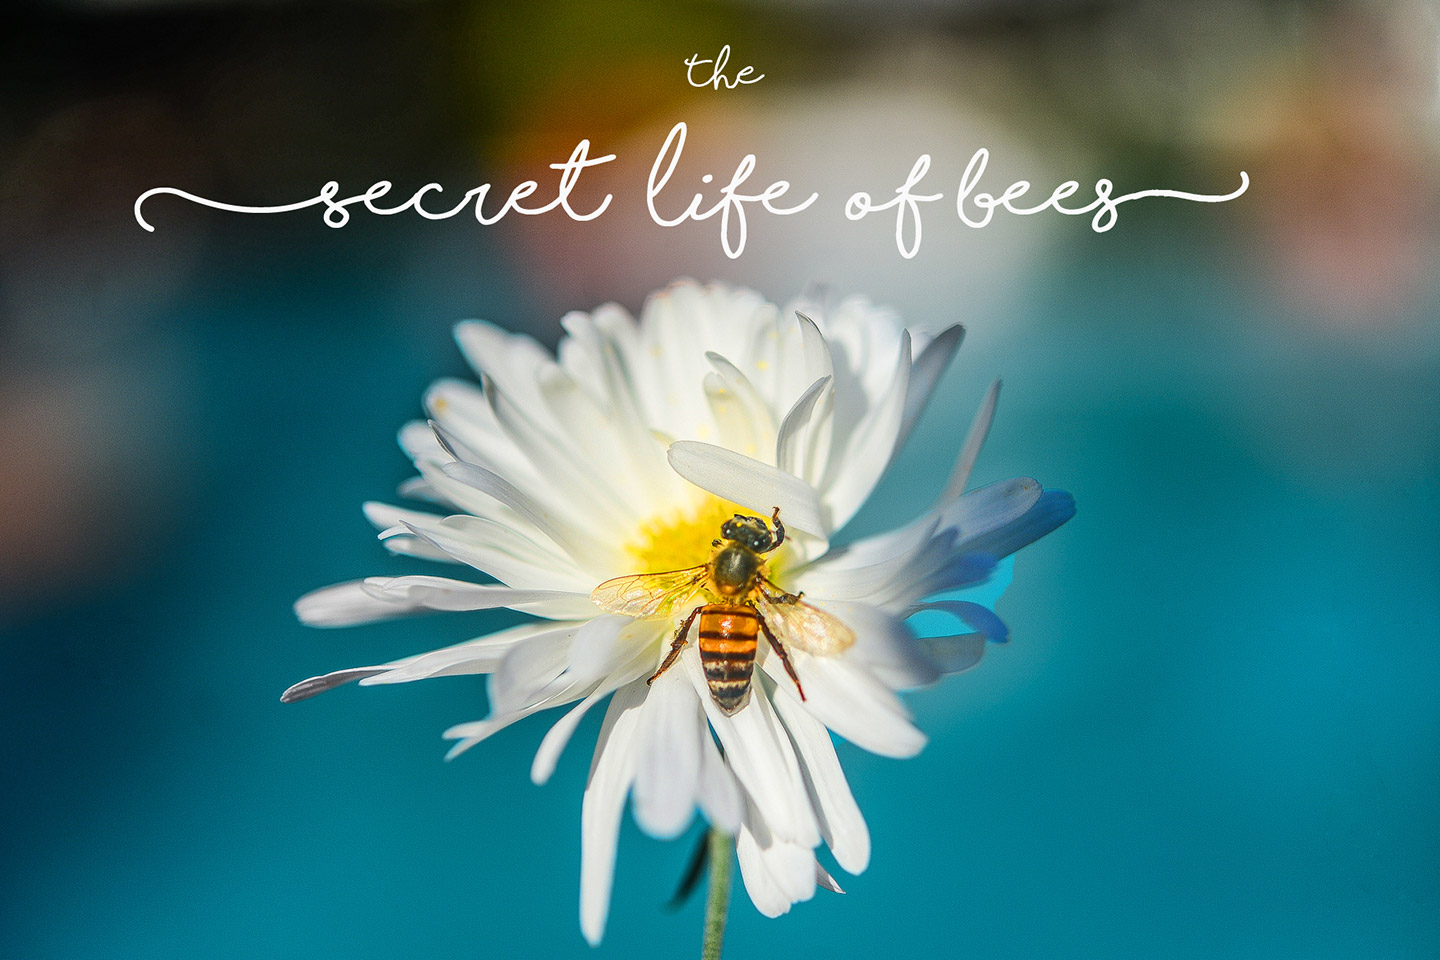 La vita segreta delle api